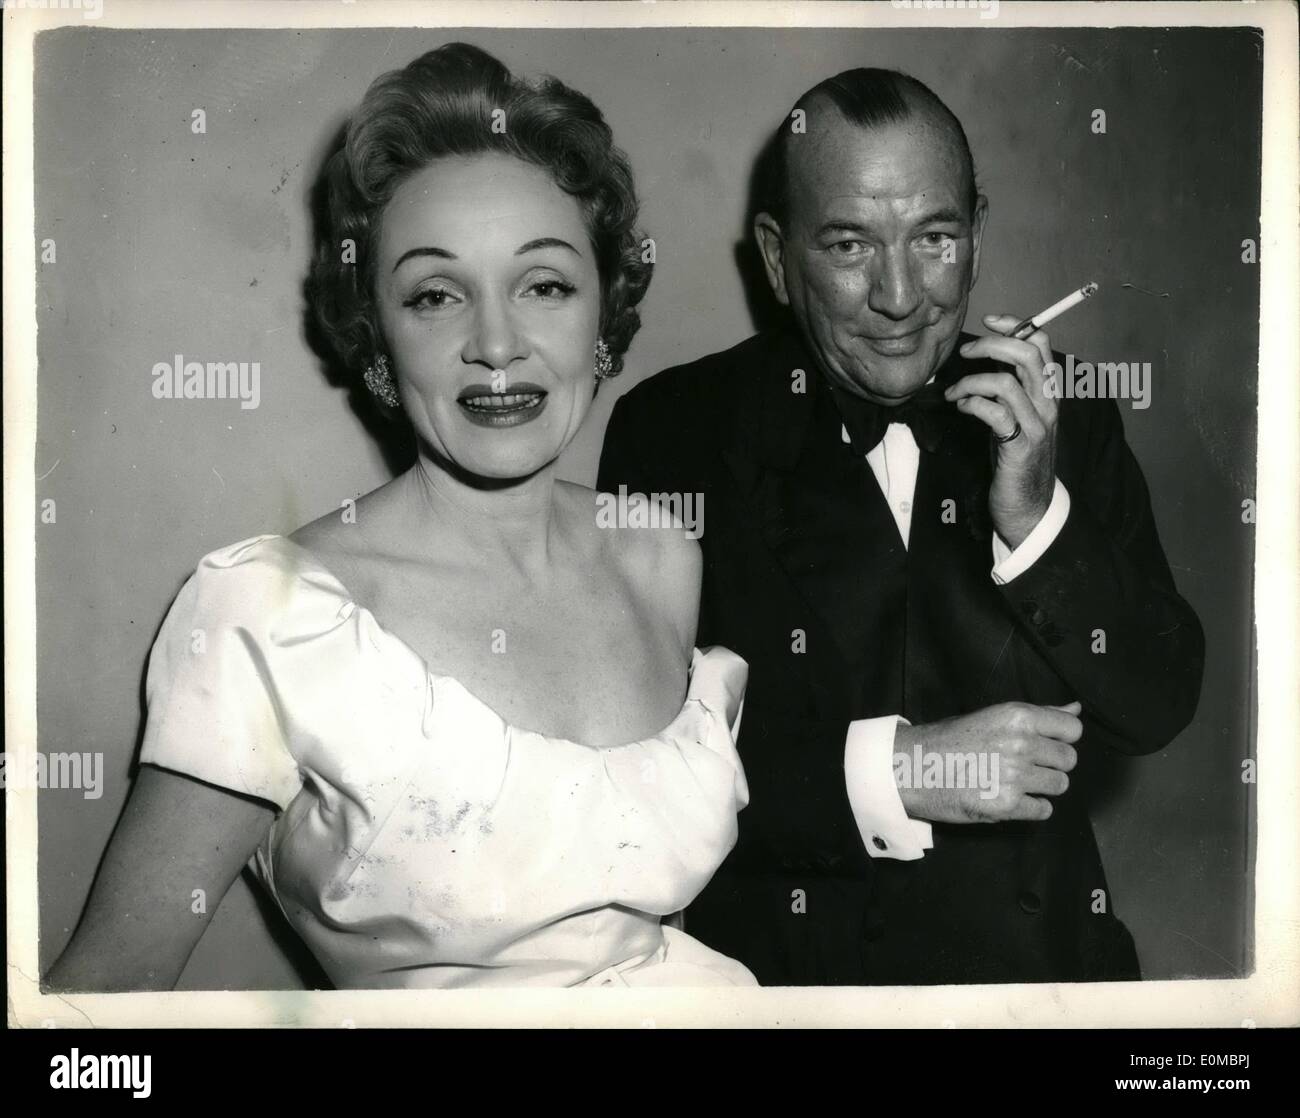 Juin 06, 1954 - Marlene Dietrich ARRIVENT À LONDRES PARTICIPE À NOEL COWARD'S NOUVELLE NEIGE ''APRÈS LA BALLE'' Marlene Dietrich, le ''grand-mère glamour. Arrivé à Londres depuis hier à New York faible apparaissent dans un cabaret à Londres ,fight club sur Nonday. Hier soir, elle est allée Noe sith : lâche pour voir son maintenant jouer ''Après le bal' au Globe Theatre. PHOTO MONTRE : MARIENE DIETRICH escorté par son vieil ami Neel C9wari goon arrivant à la T.obe Theatre hier soir. Banque D'Images